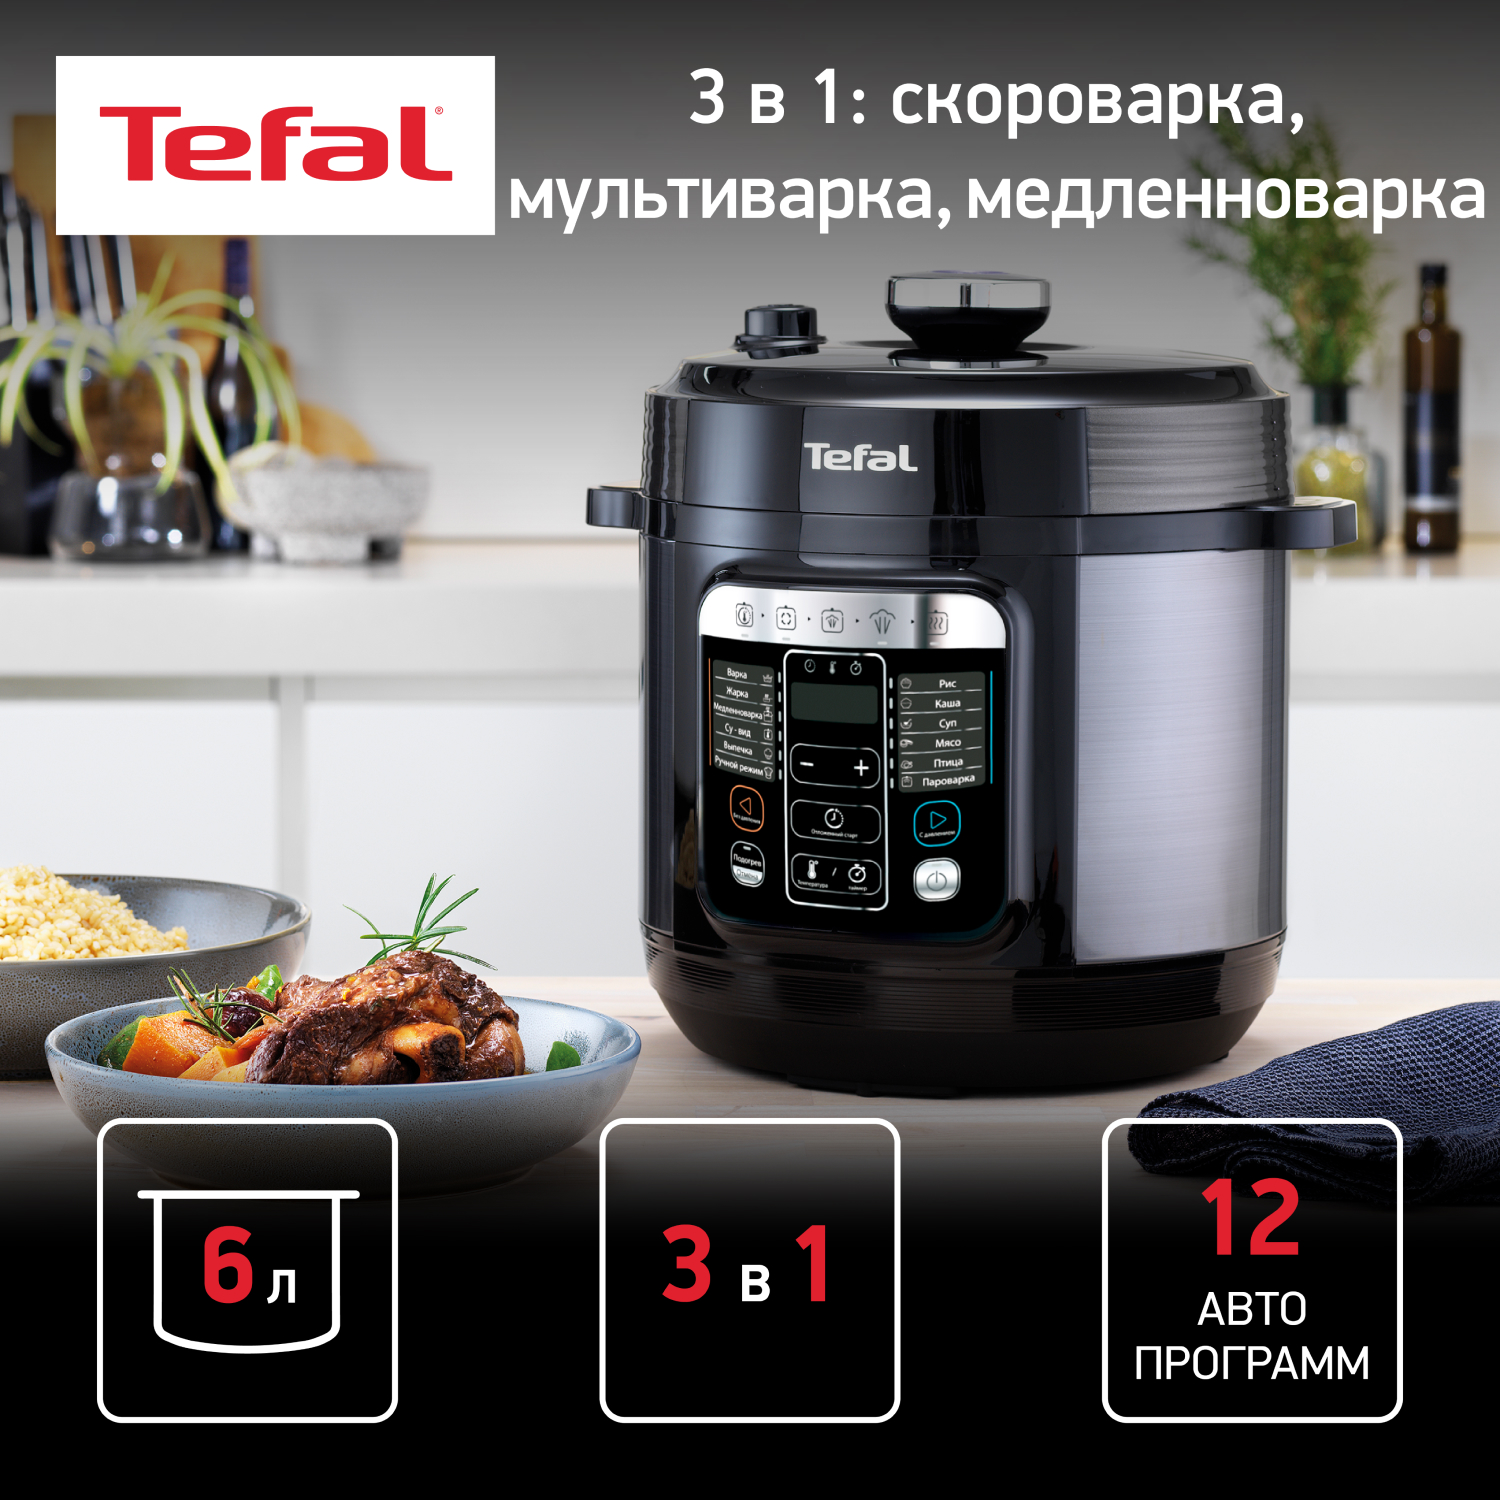 Мультиварка TEFAL CY601832, купить в Москве, цены в интернет-магазинах на Мегамаркет